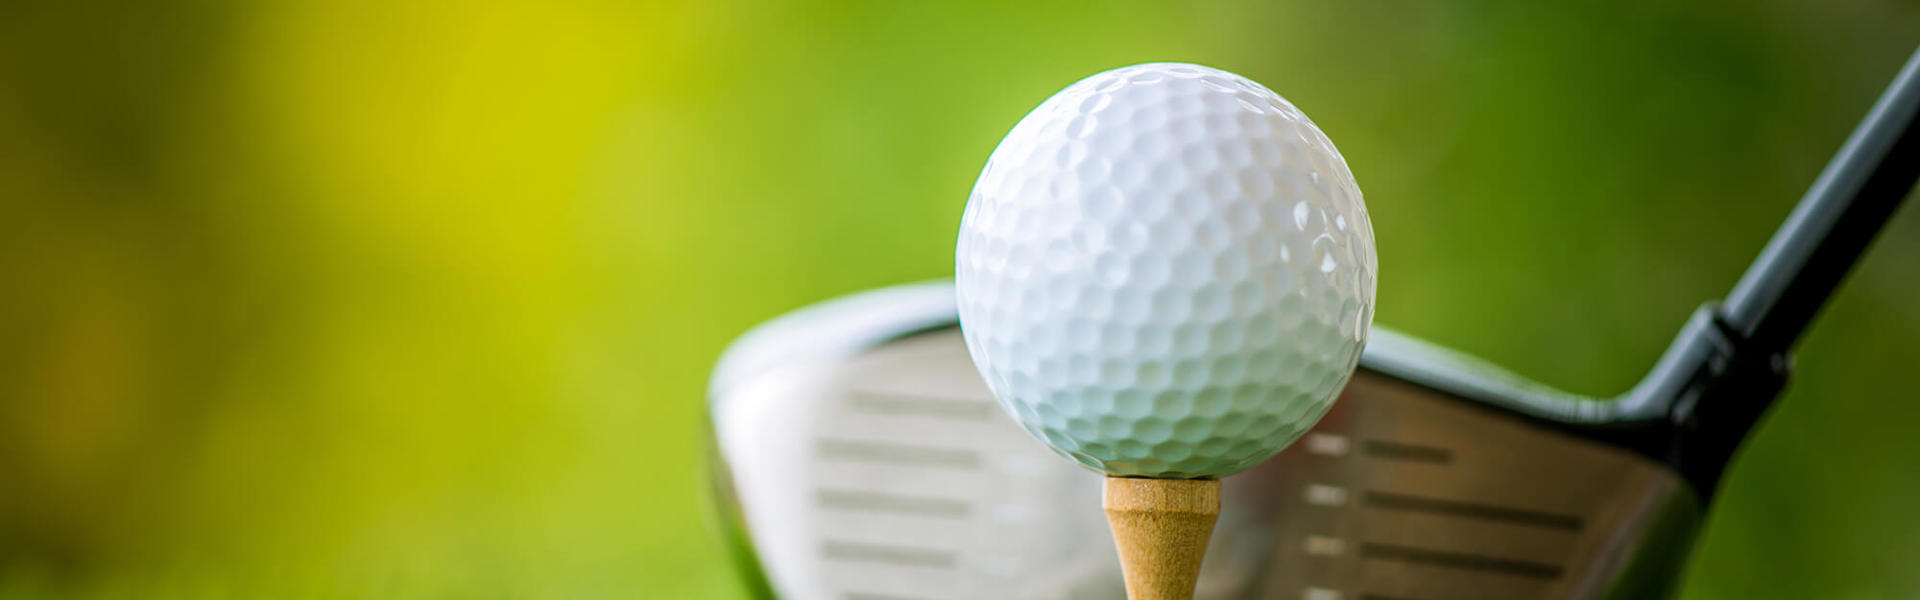 A golf ball and golf club 